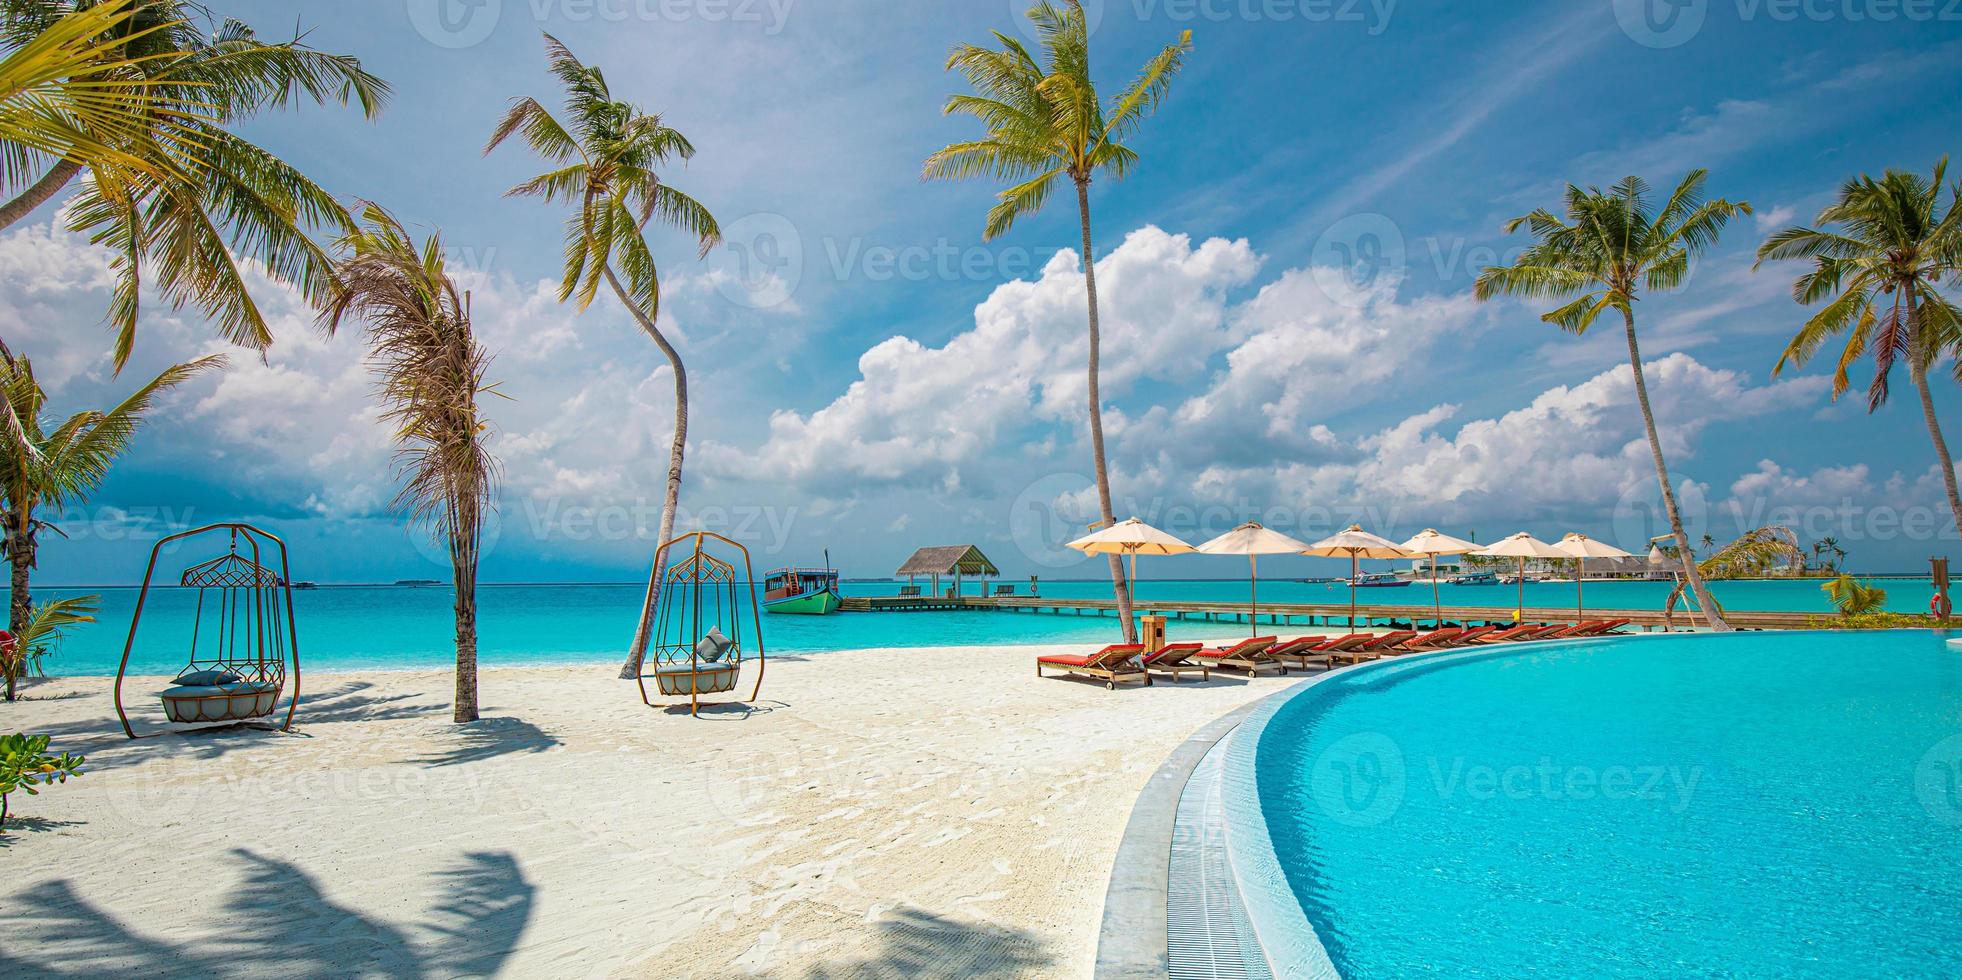 panoramisch vakantielandschap. luxe strandresort hotel zwembad en strandstoelen of ligstoelen onder parasols met palmbomen, blauwe zonnige hemel. zomer eiland aan zee, reizen vakantie achtergrond foto